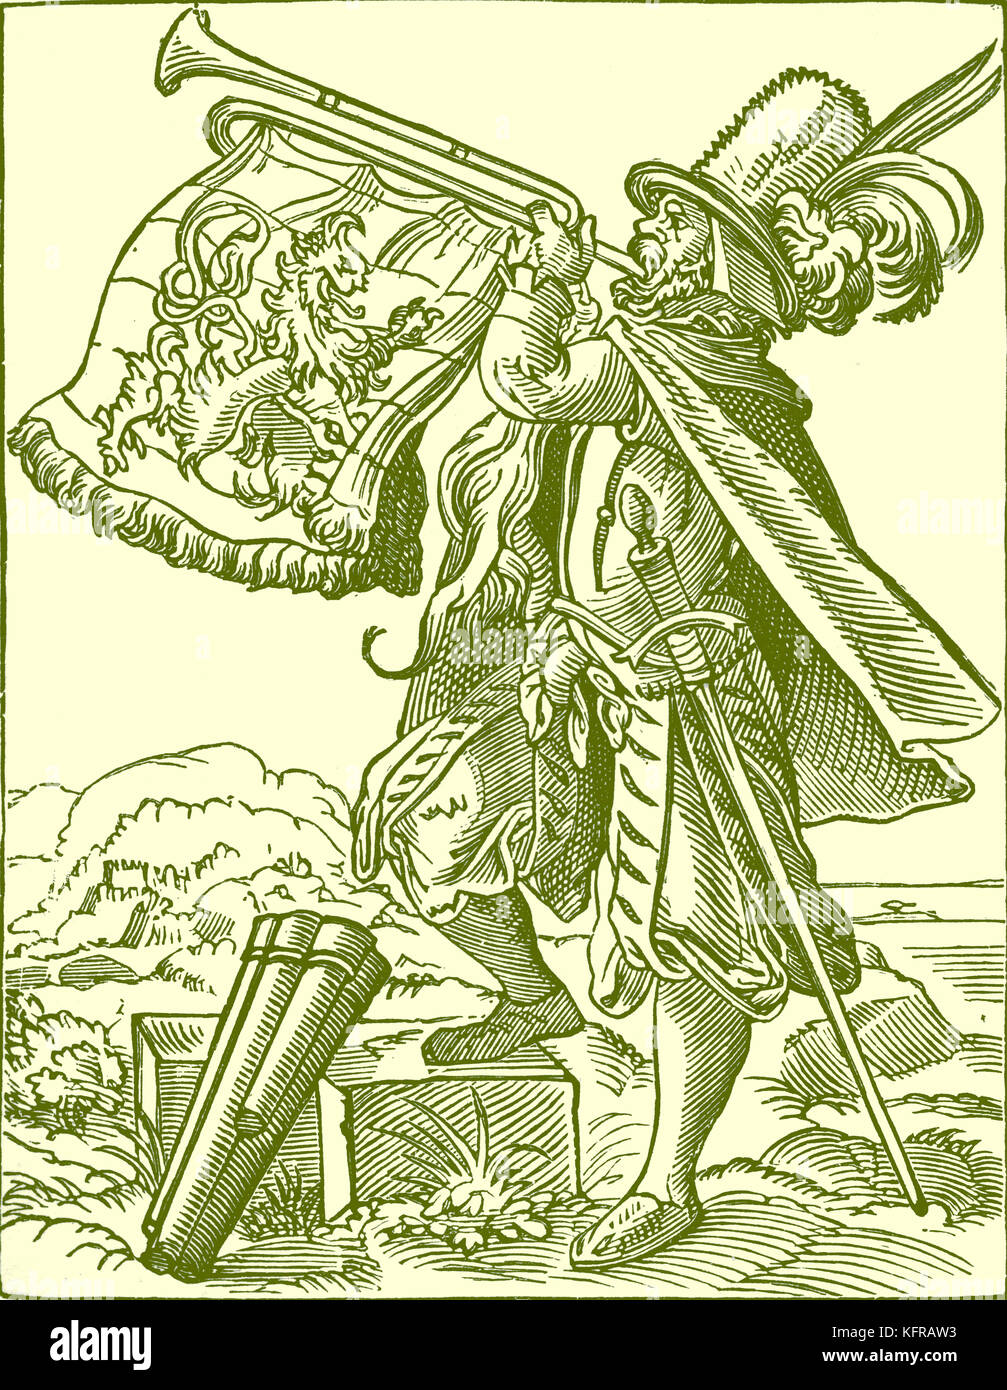 Alemán tocando una trompeta militar por Jost Amman, reproducido desde el siglo XVI un grabado. Artista suizo, el 13 de junio, 1539 - 17 marzo, 1591. Foto de stock